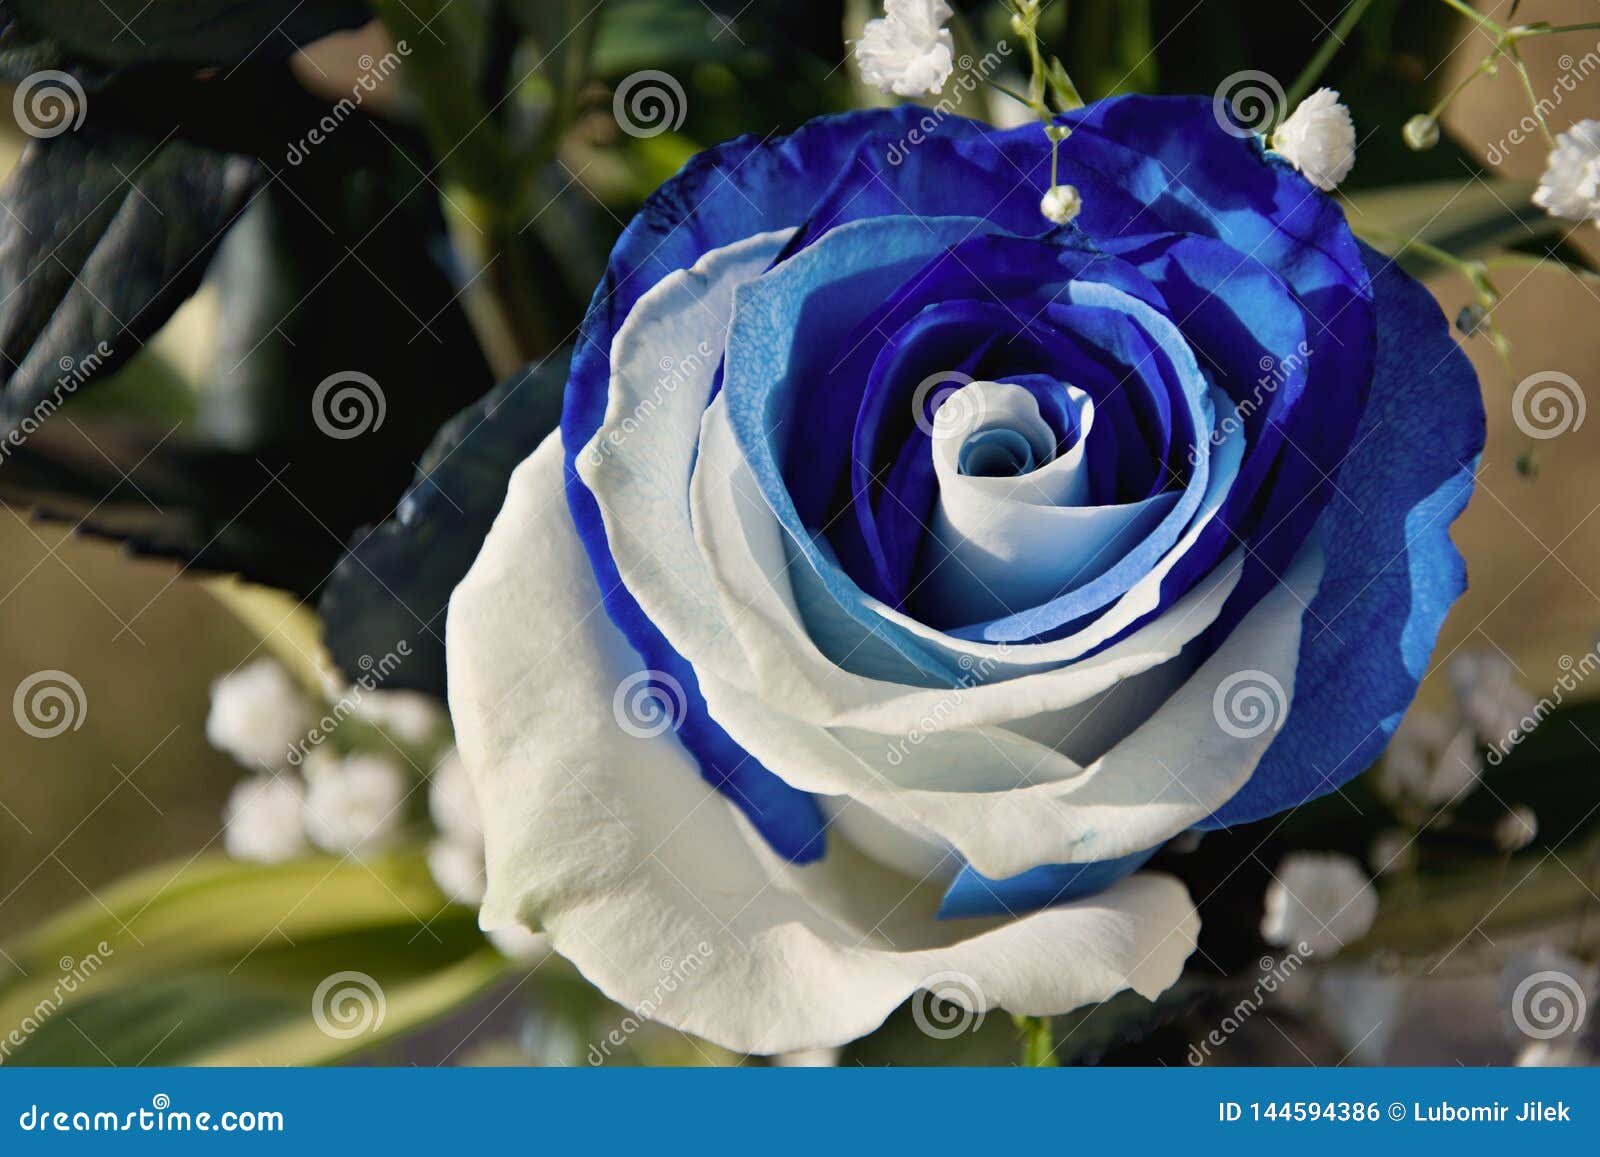 Ramo Hermoso De Rosas Azul-blancas La Flor Subió Color Azul Y Blanco Regalo  Para La Mujer O El Hombre Foto de archivo - Imagen de color, regalo:  144594386